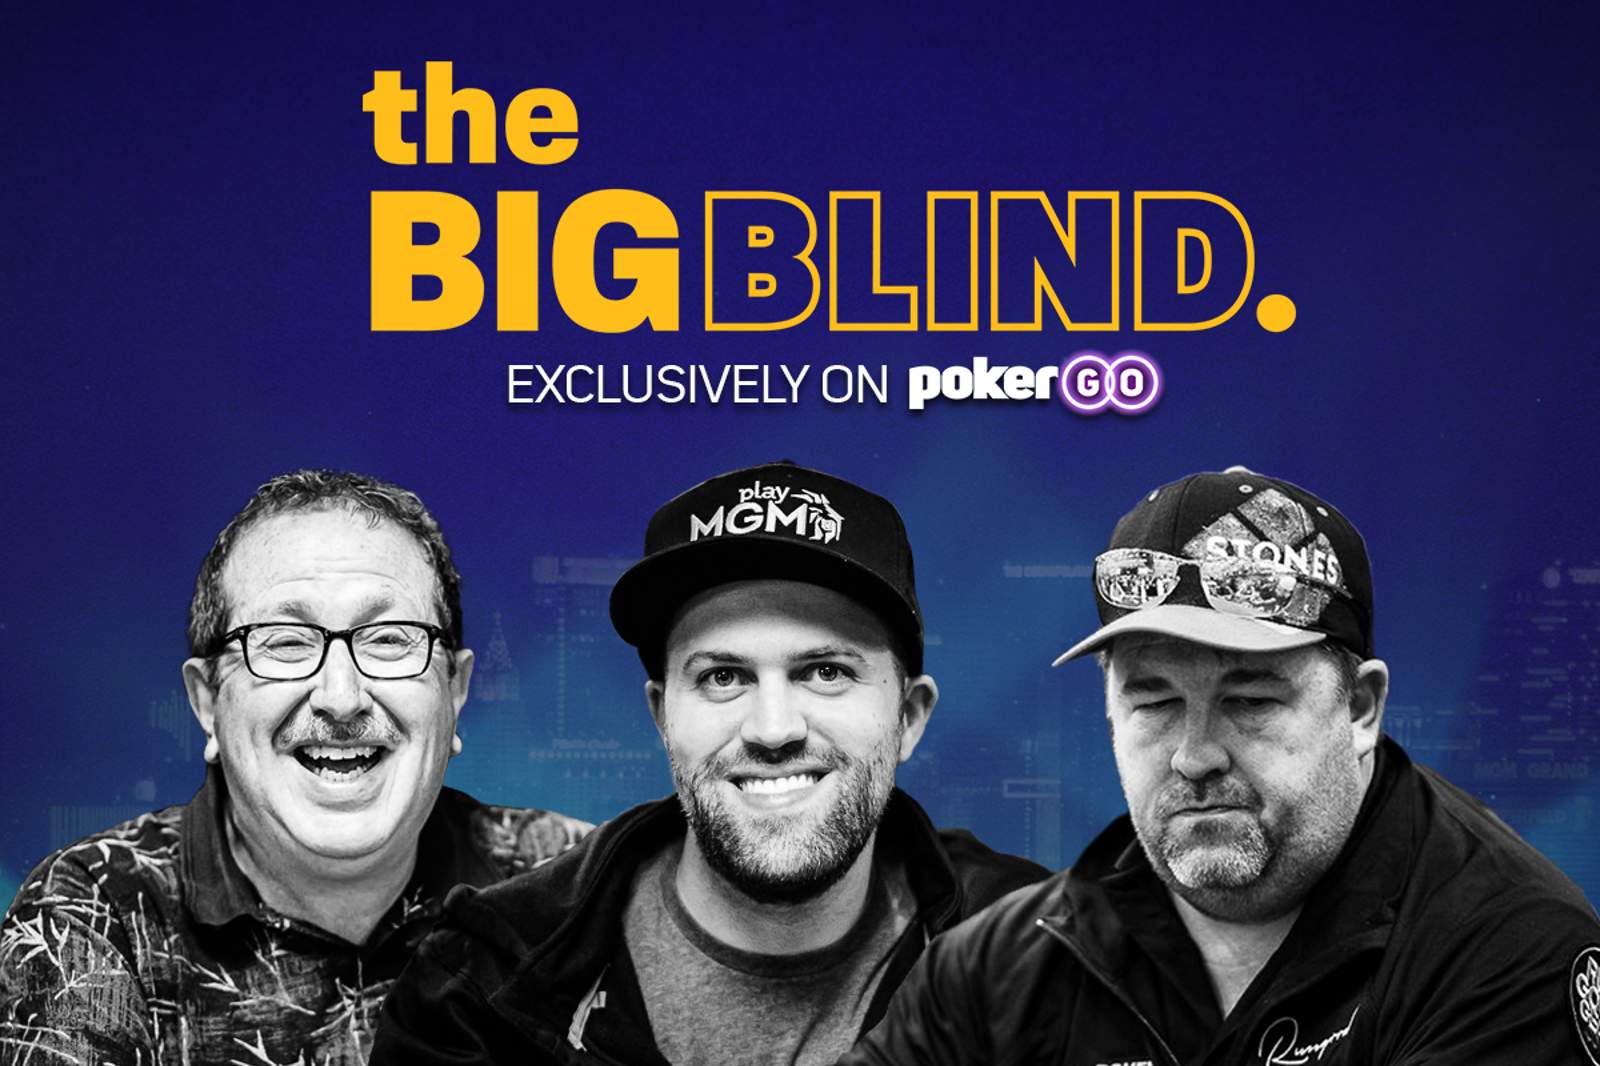 Get Set for The Big Blind Quarter Finals on PokerGO!